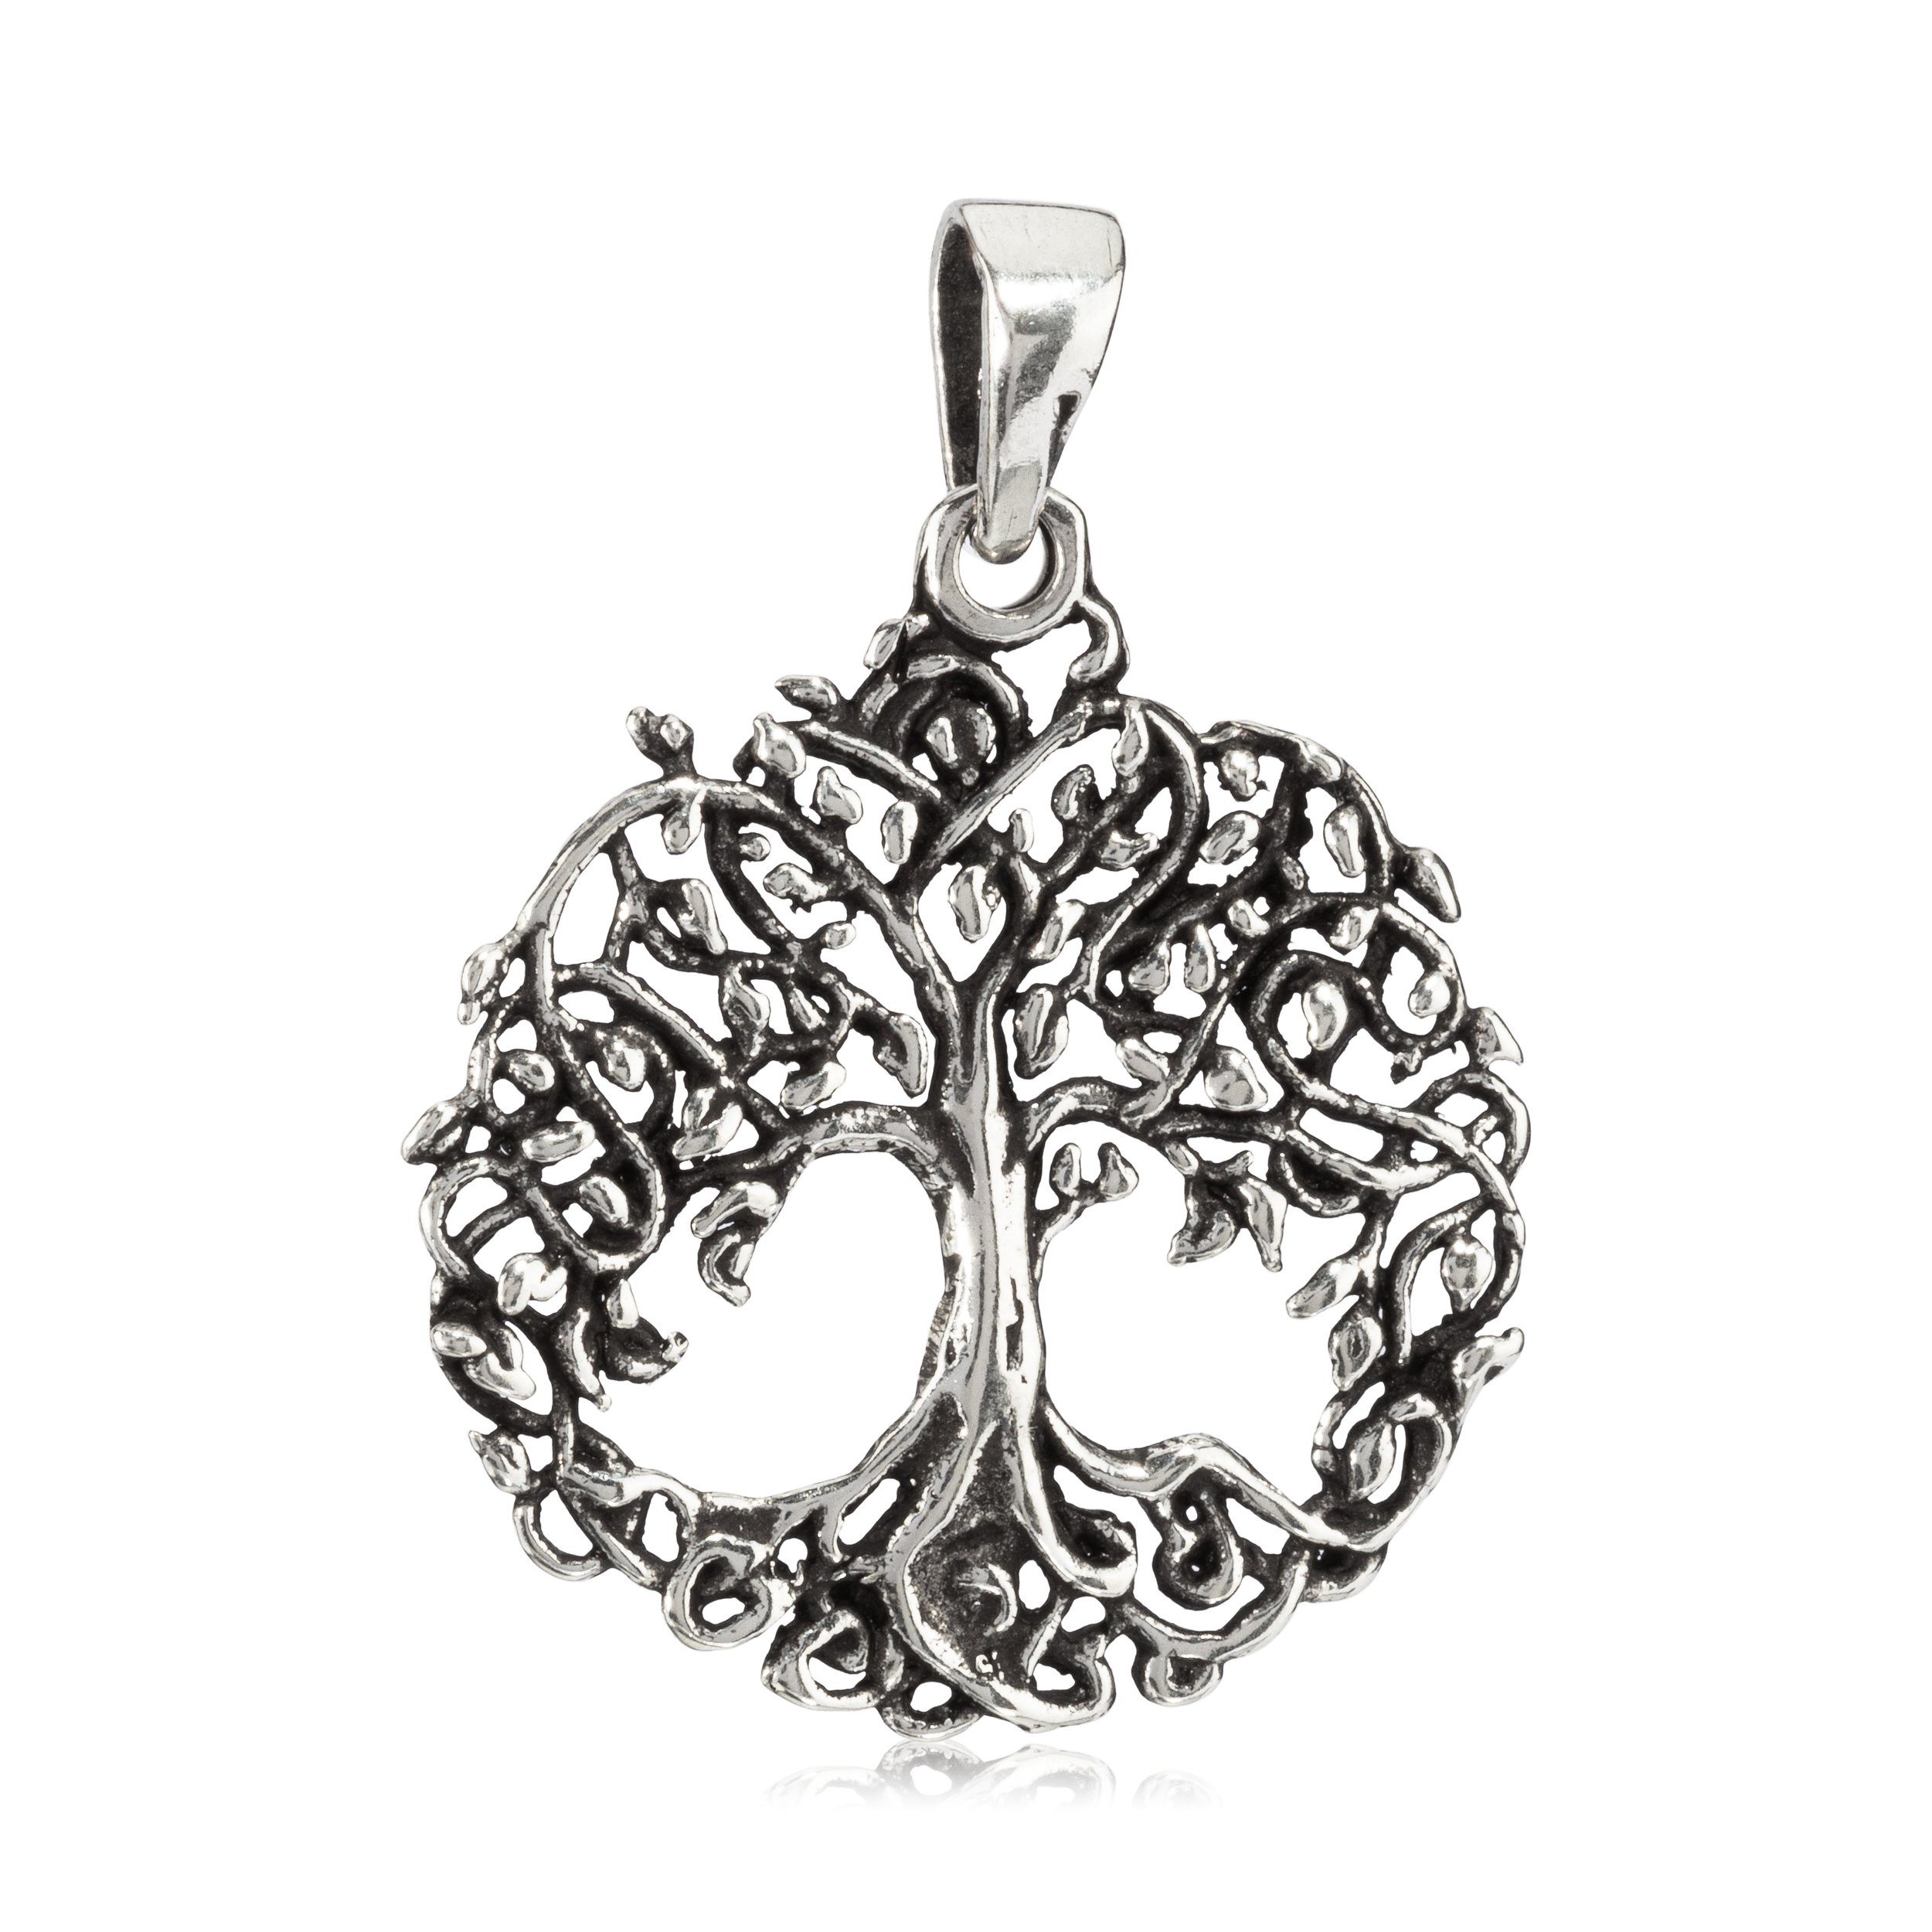 NKlaus Kettenanhänger Kettenanhänger Baum des Lebens 925 Silber 2cm Kel, 925 Sterling Silber Silberschmuck für Damen